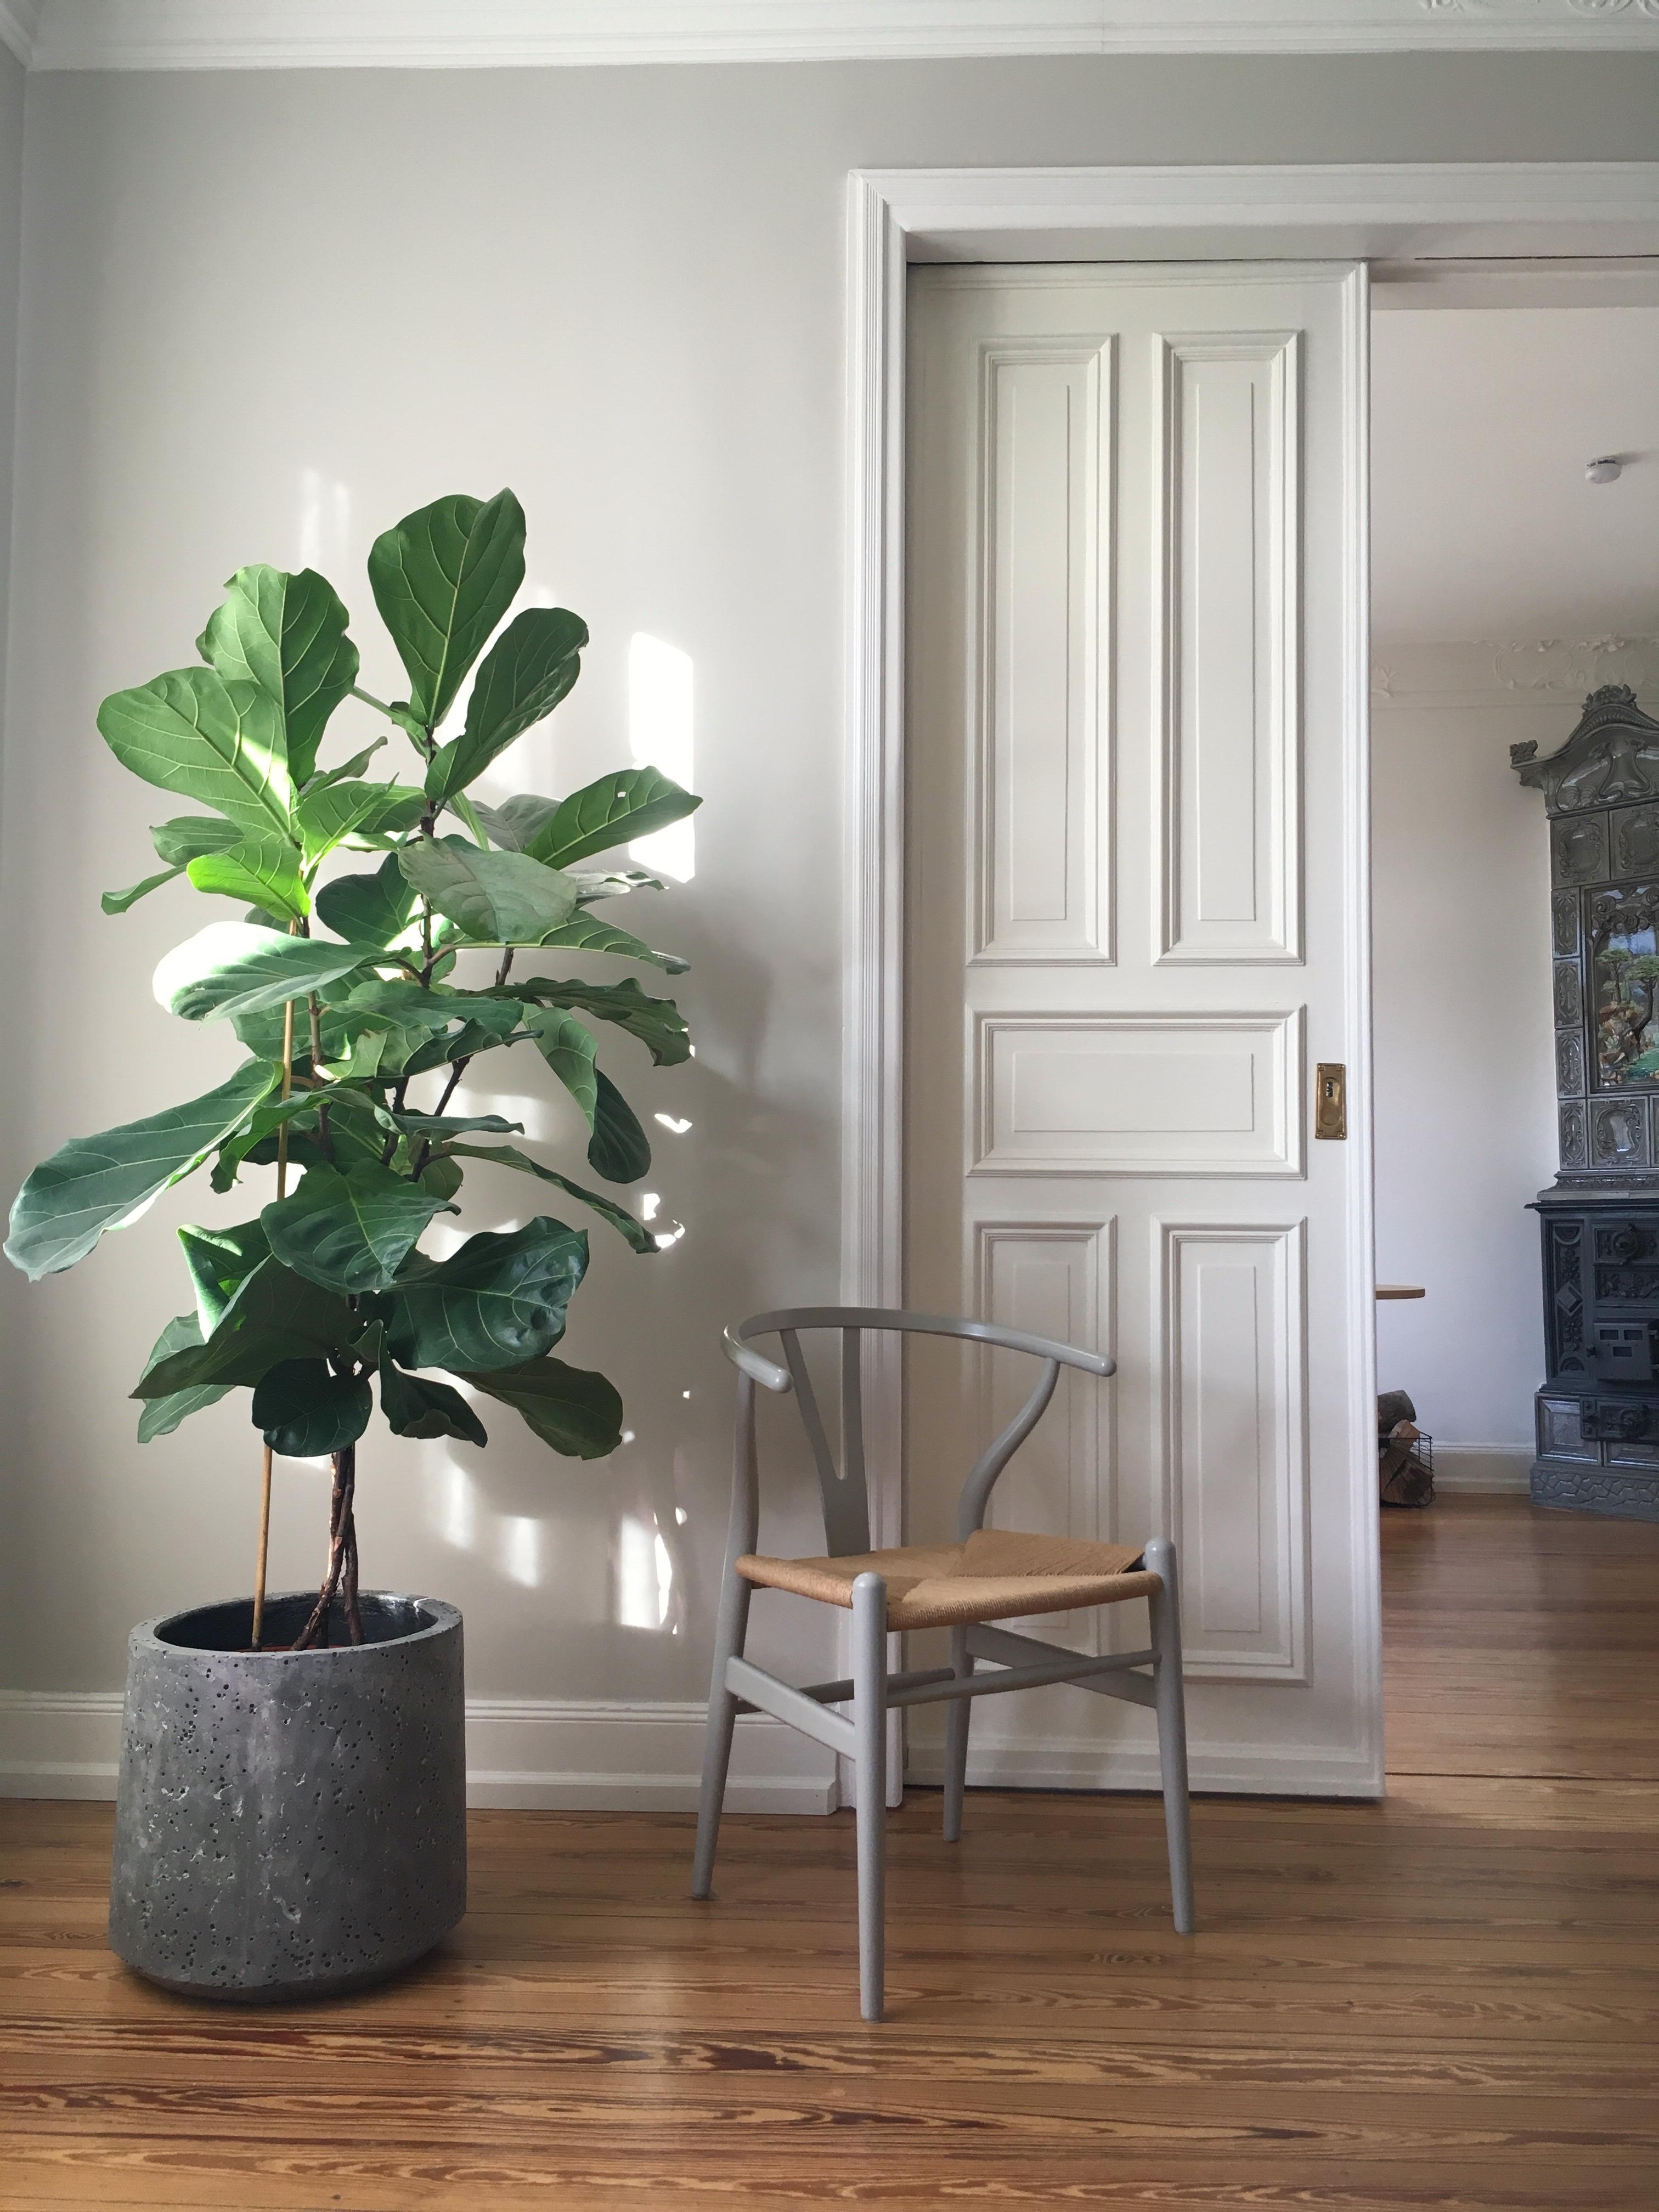 #plants #geigenfeige #living #wohnen #altbau #altbauliebe #deko #wohnzimmer #livingroom #scandi